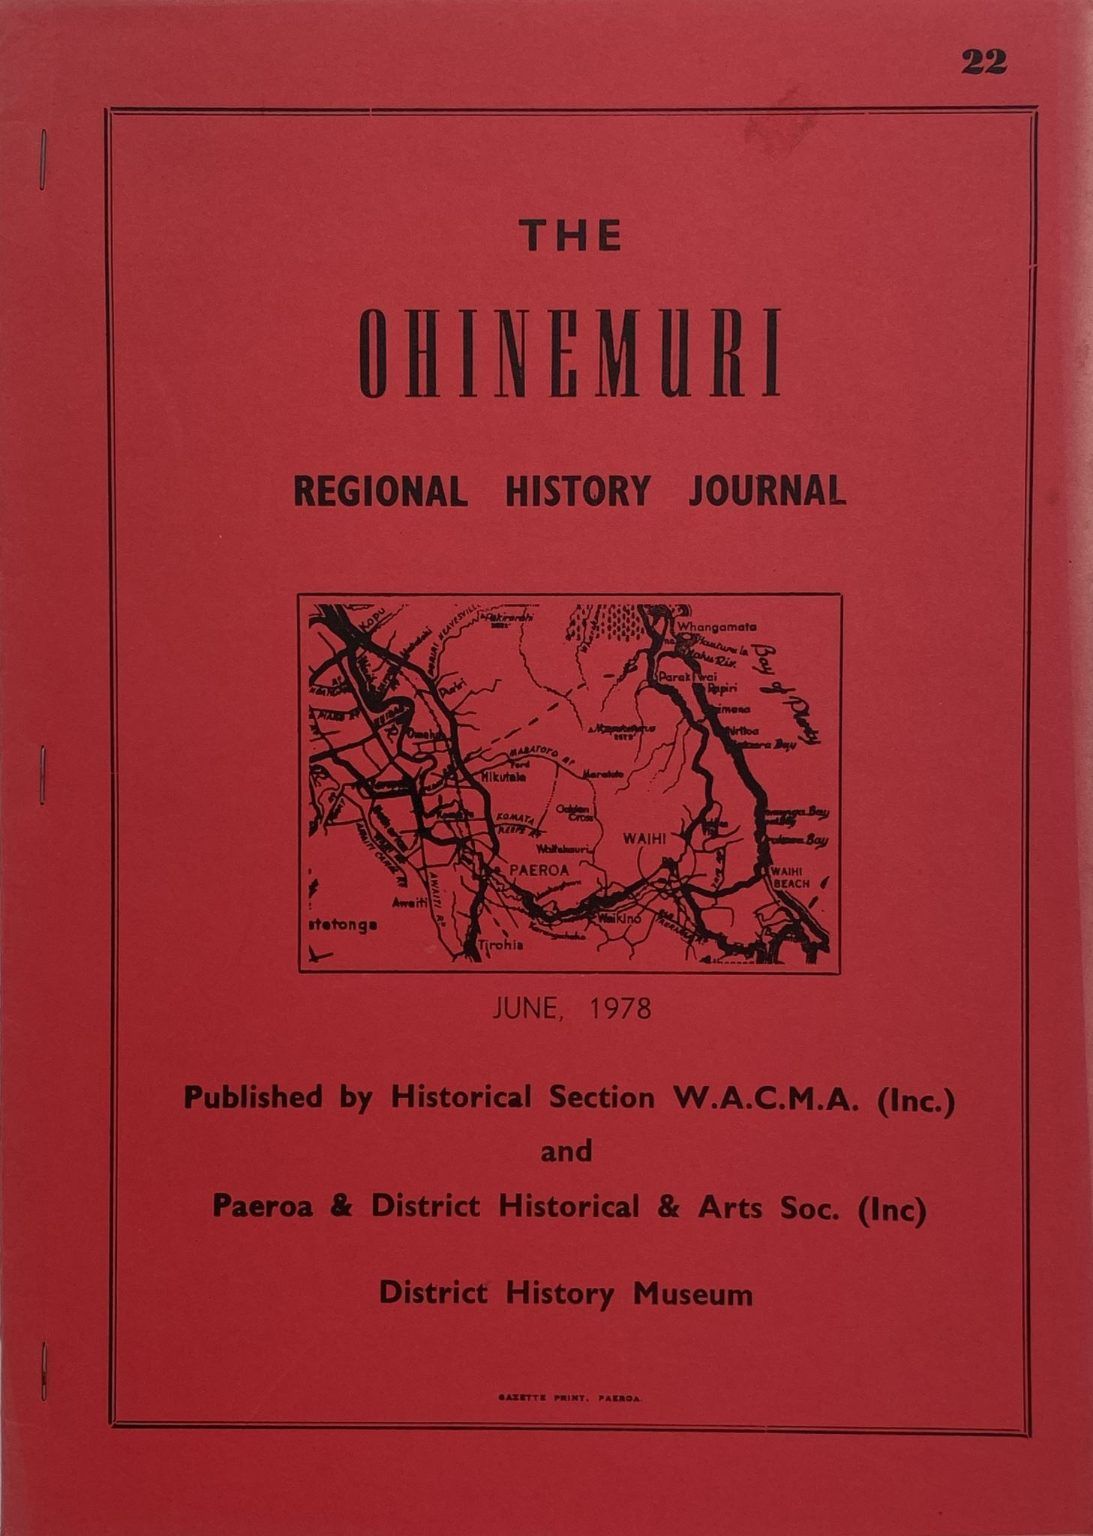 THE OHINEMURI REGIONAL HISTORY JOURNAL: June 1978